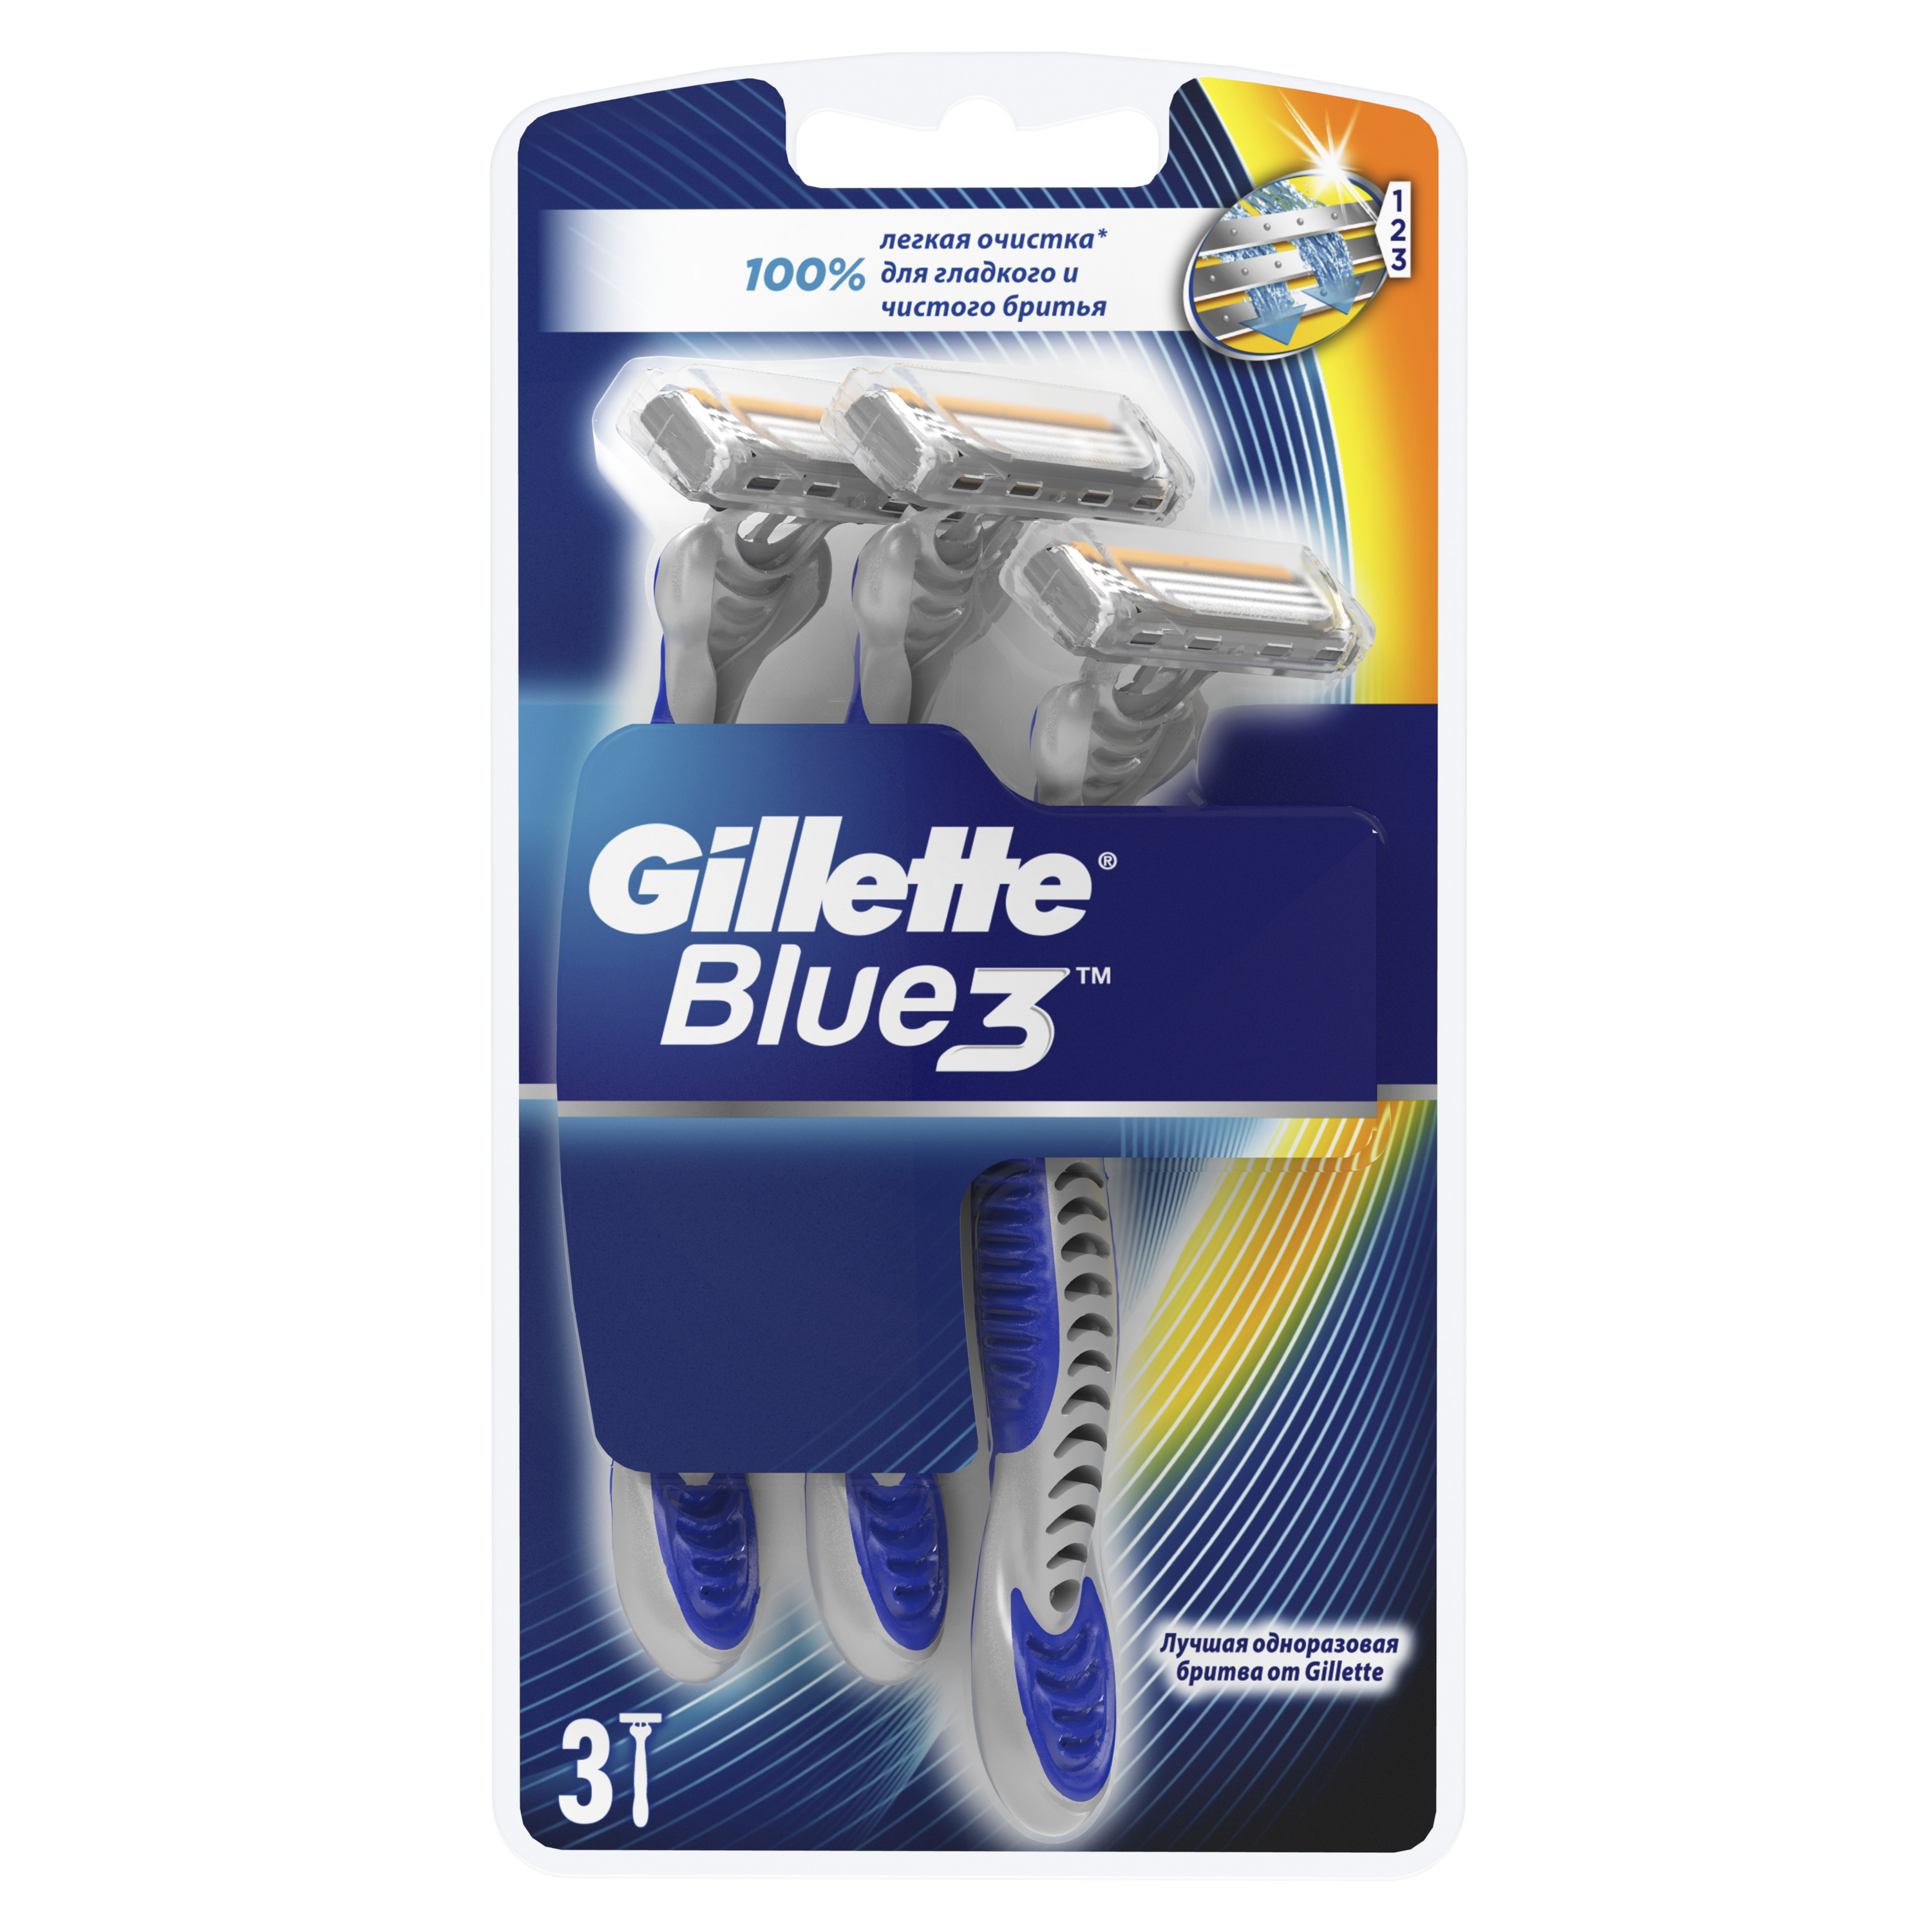 Одноразовая мужская бритва Gillette Blue3 3 шт gillette одноразовая женская бритва с 3 лезвиями simply venus